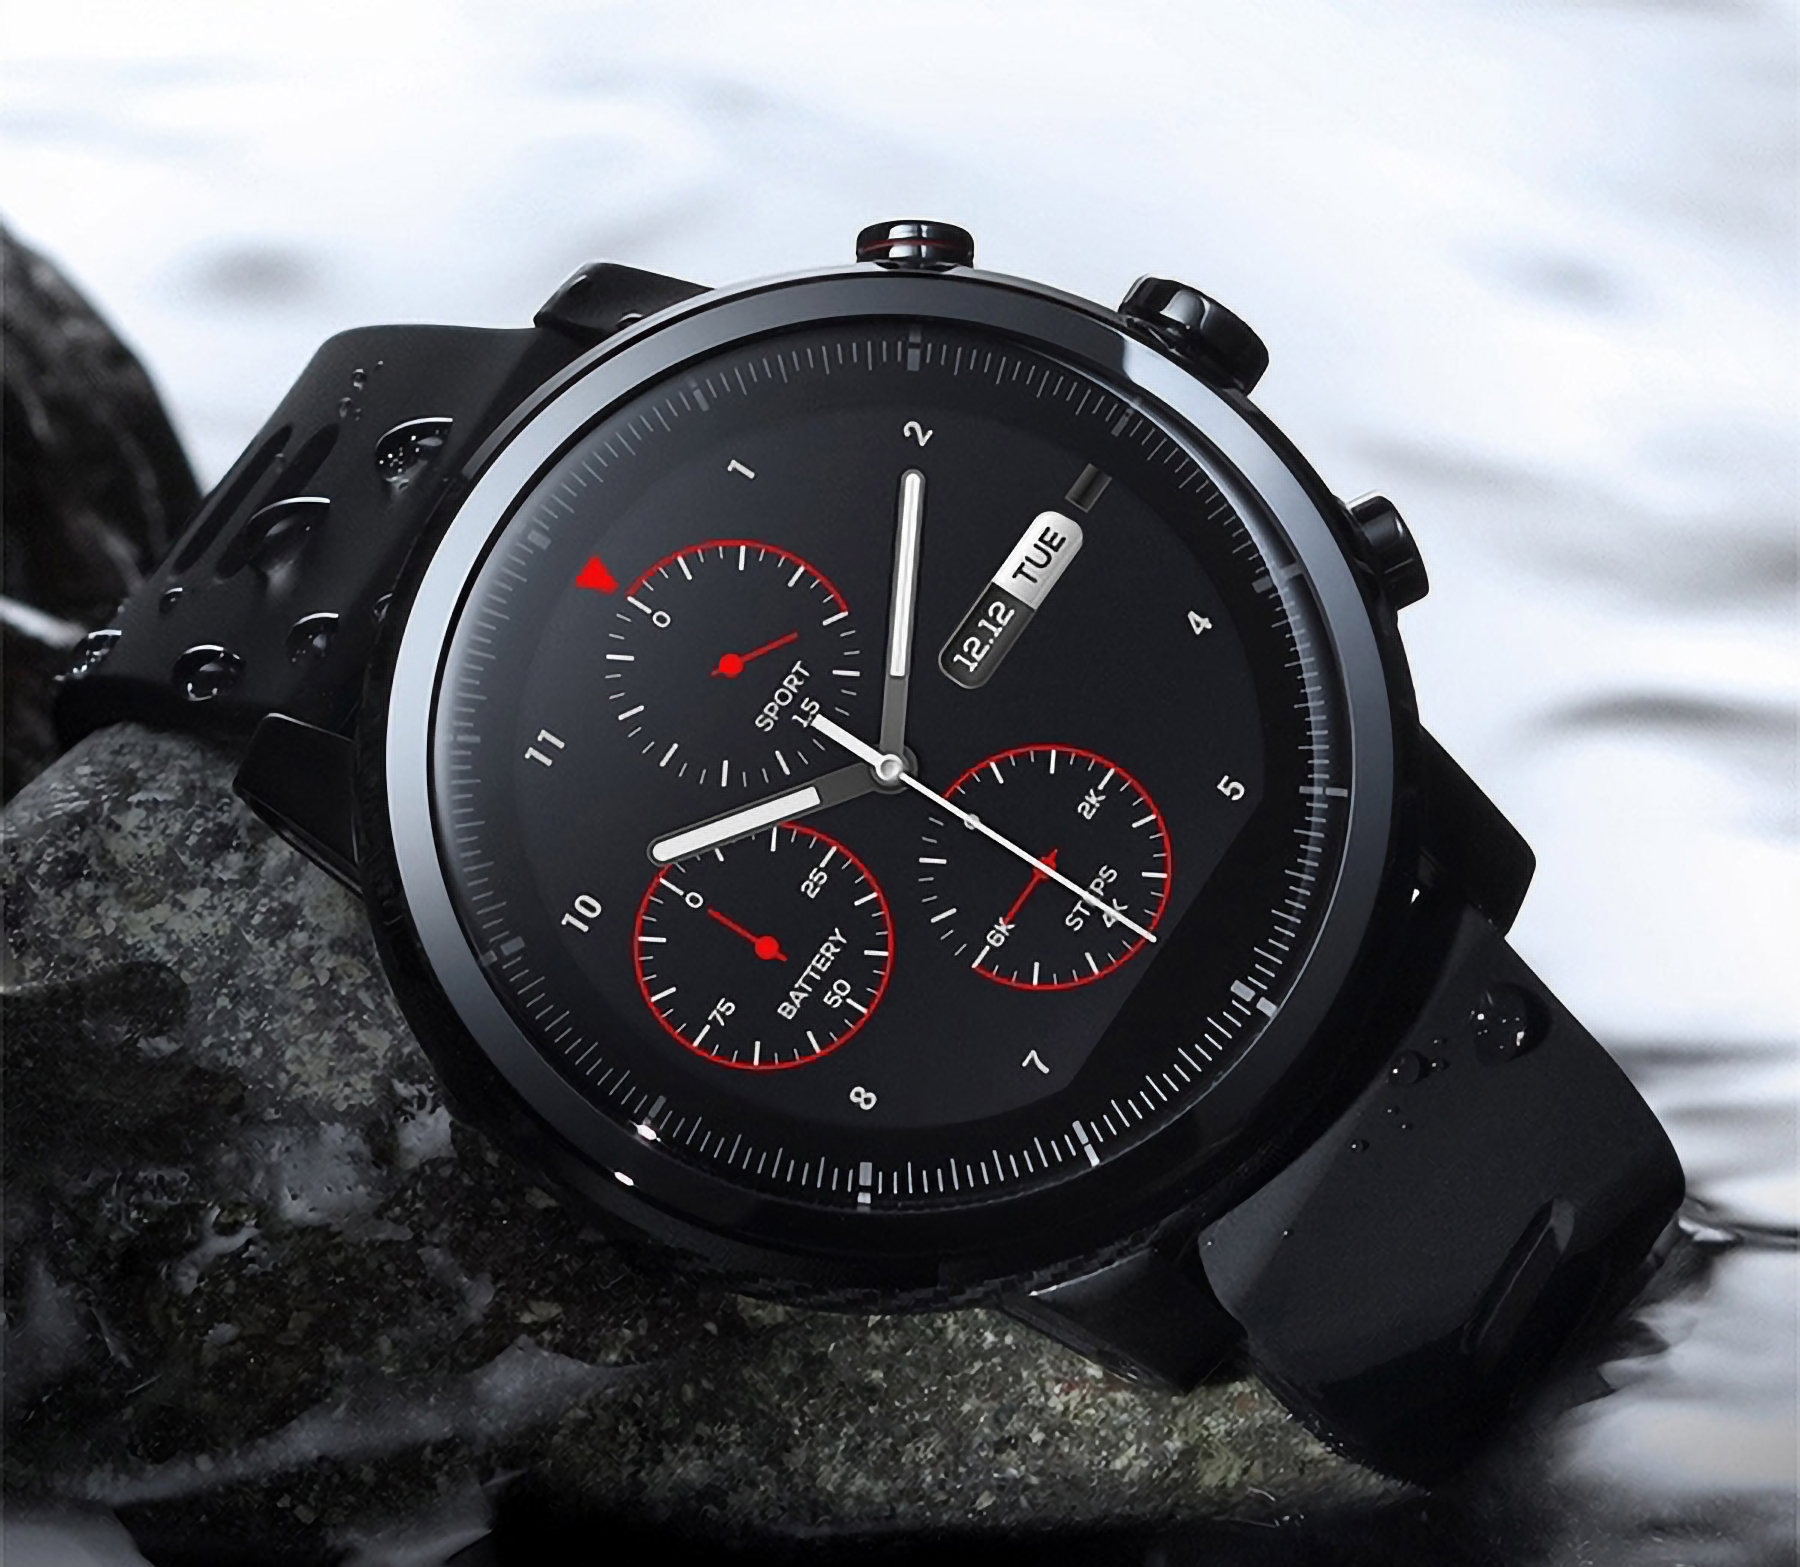 Smartwatch originale Amazfit Stratos in vendita su AliExpress per 78 dollari